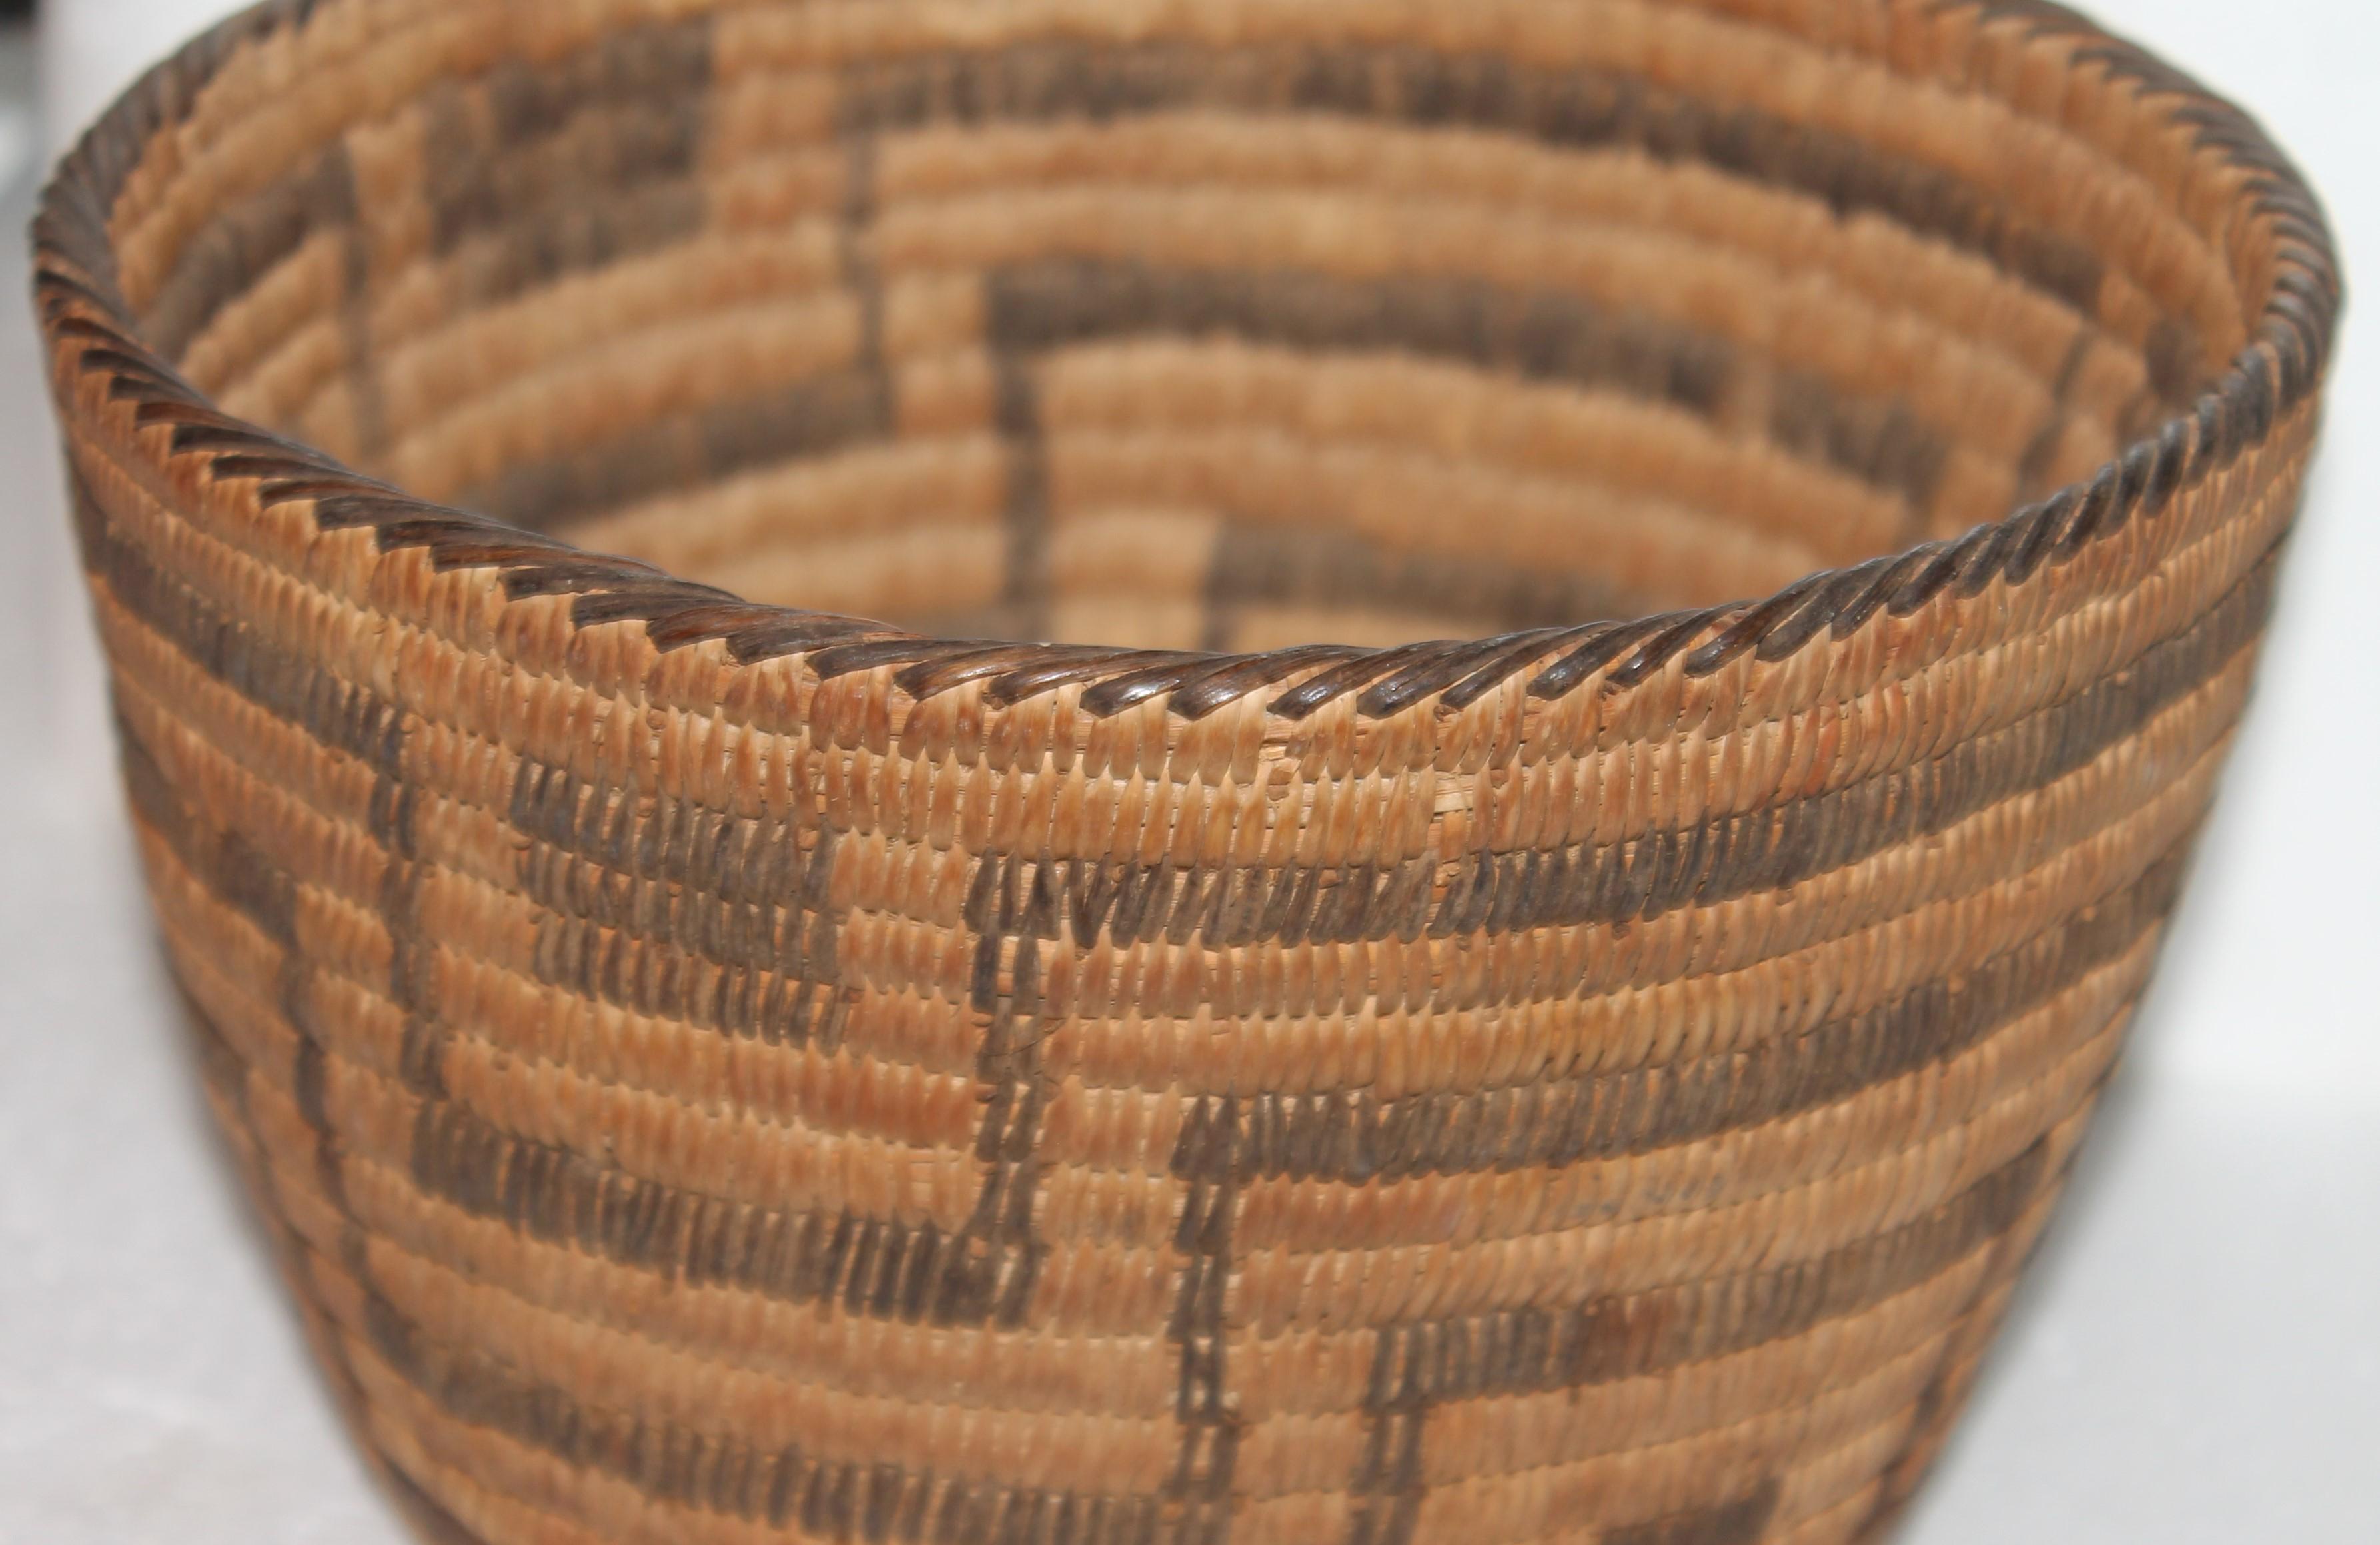 Diese feine und sehr frühe Pima American Indian handgeflochtenen Korb ist in Ordnung, wie gefunden Zustand. Dieser wunderschöne Korb hat eine schöne alte Patina und stammt aus einer privaten indianischen Sammlung.